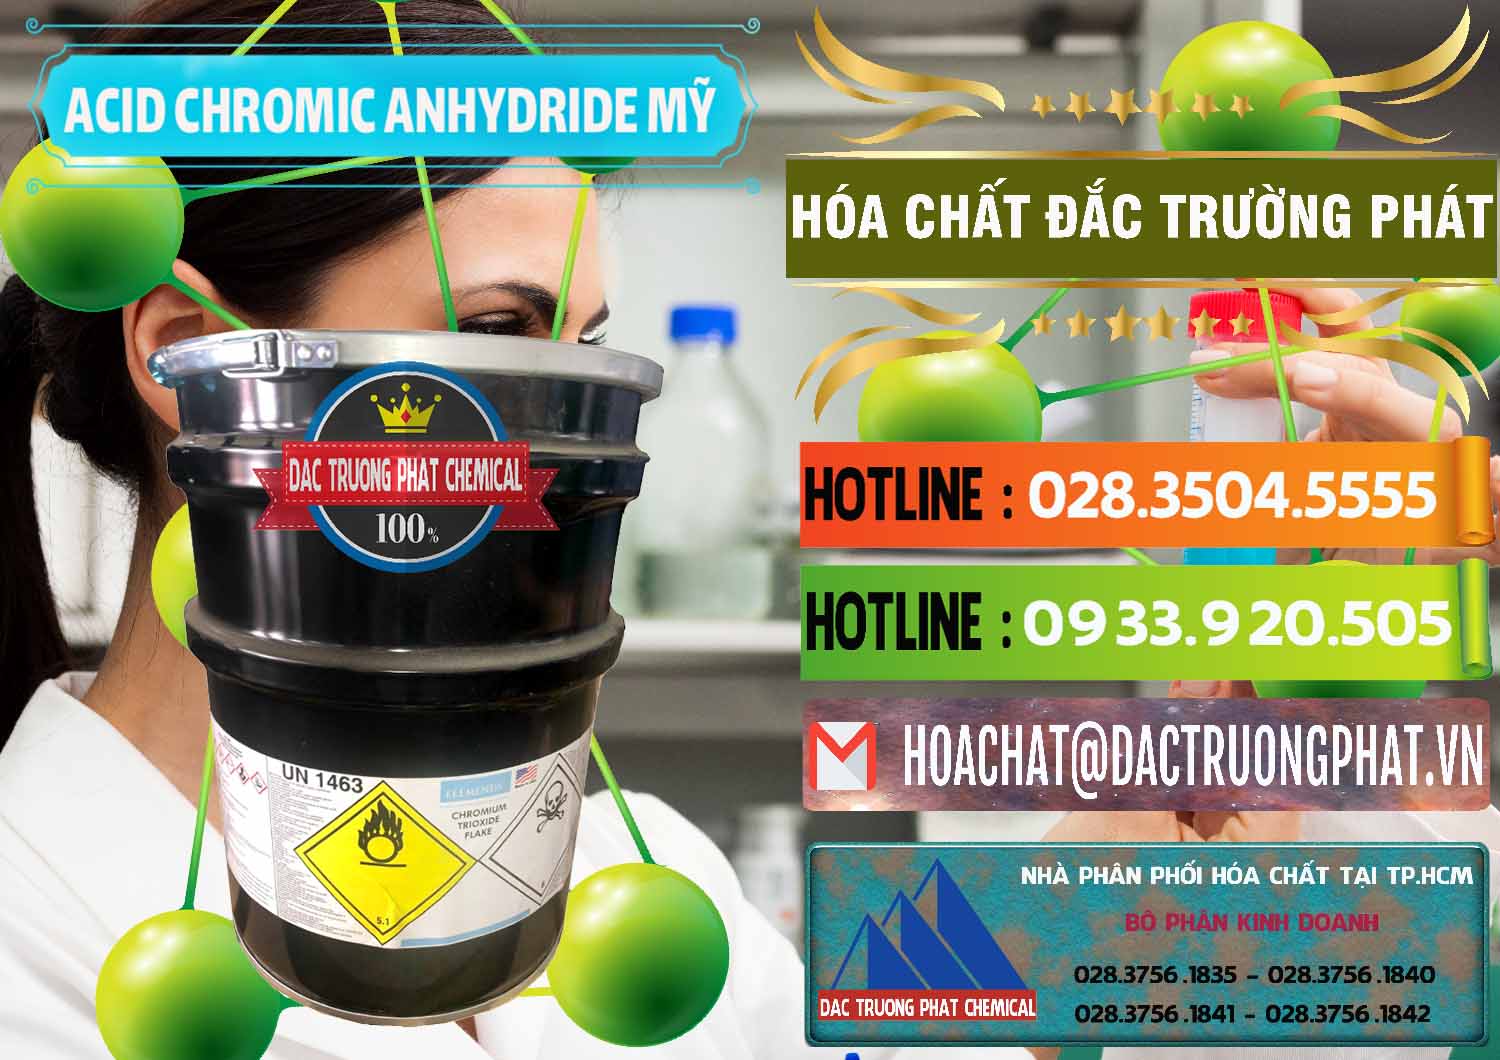 Chuyên bán và cung ứng Acid Chromic Anhydride - Cromic CRO3 USA Mỹ - 0364 - Đơn vị chuyên bán & cung cấp hóa chất tại TP.HCM - cungcaphoachat.com.vn